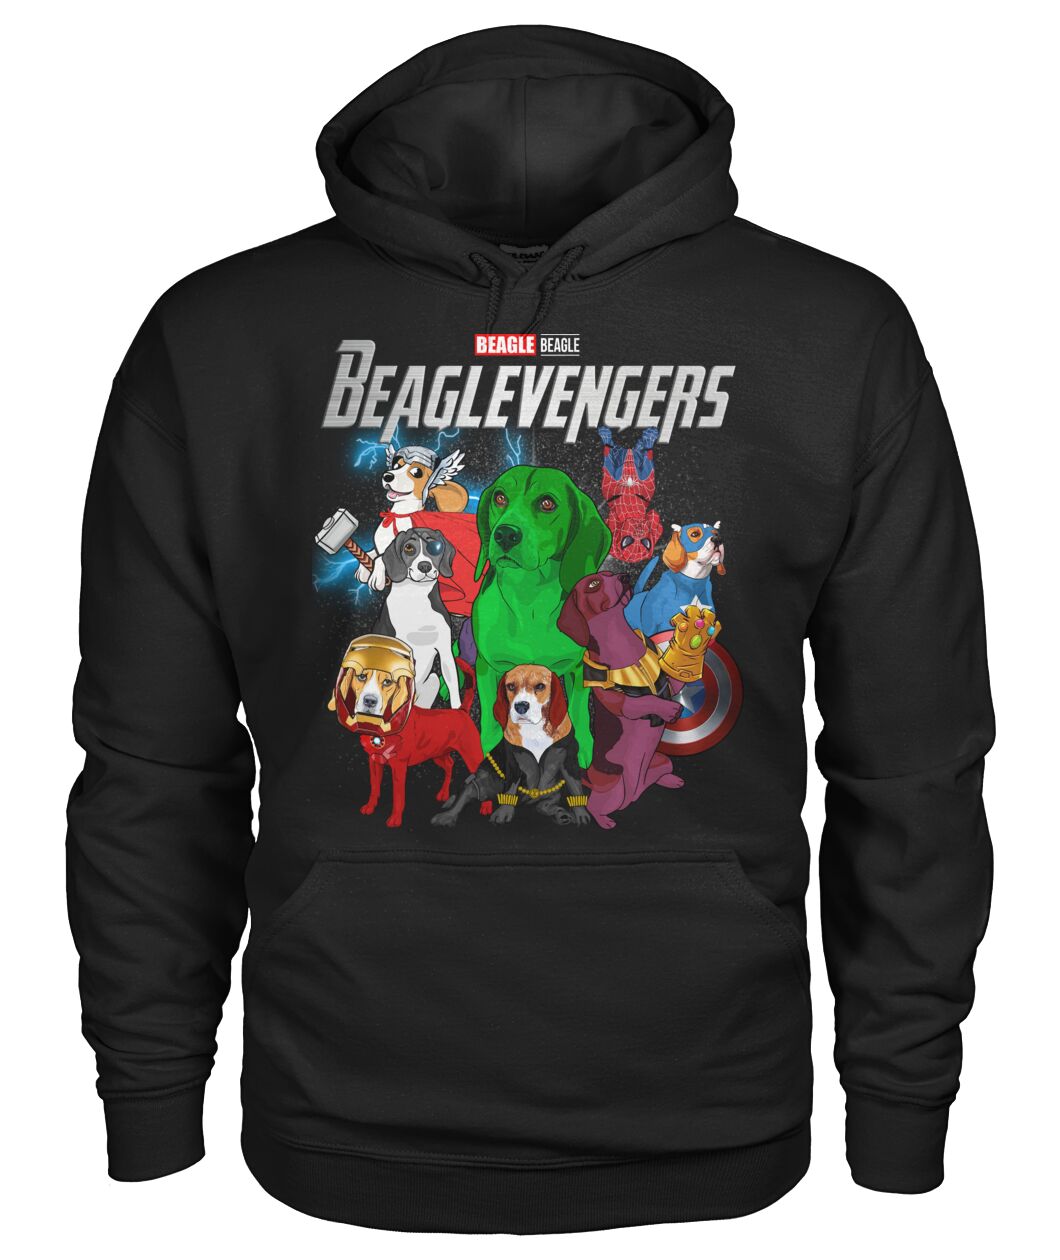 Beaglevengers 3D Hoodie, Shirt 9